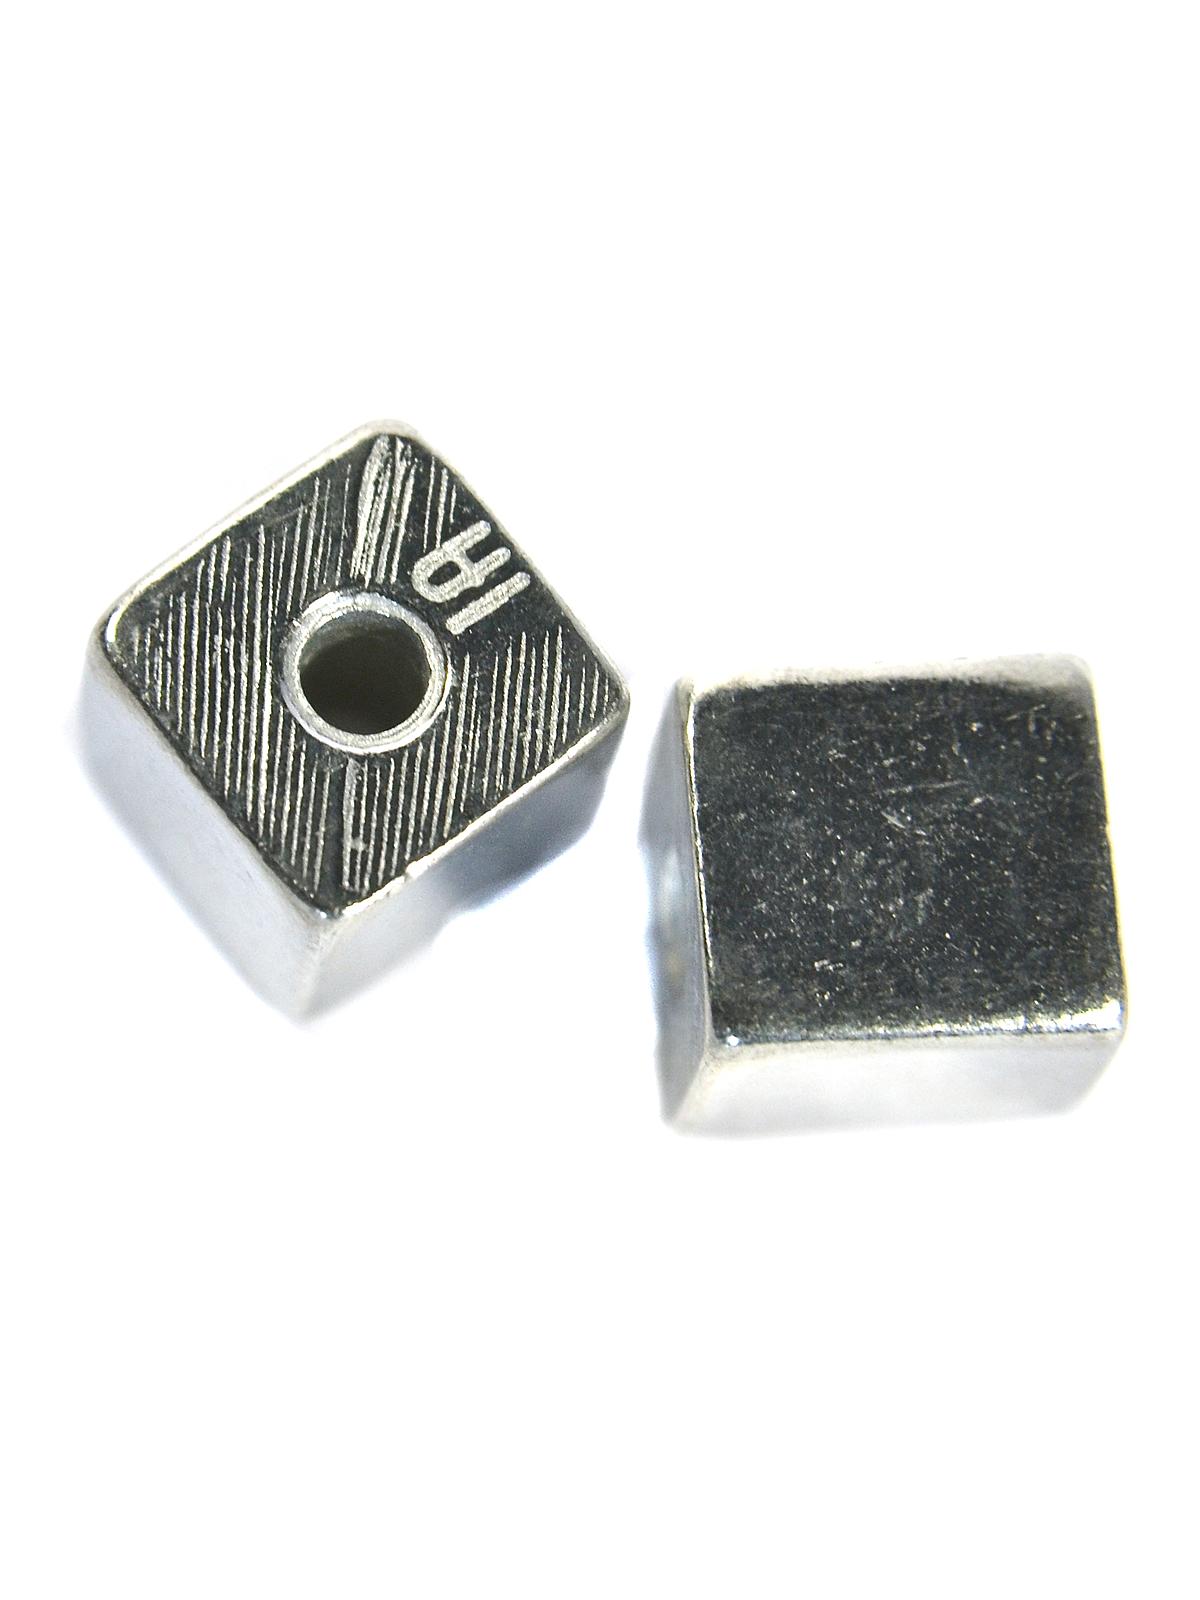 Pewter Metal Blanks Cube 3 8 In. Pack Of 2